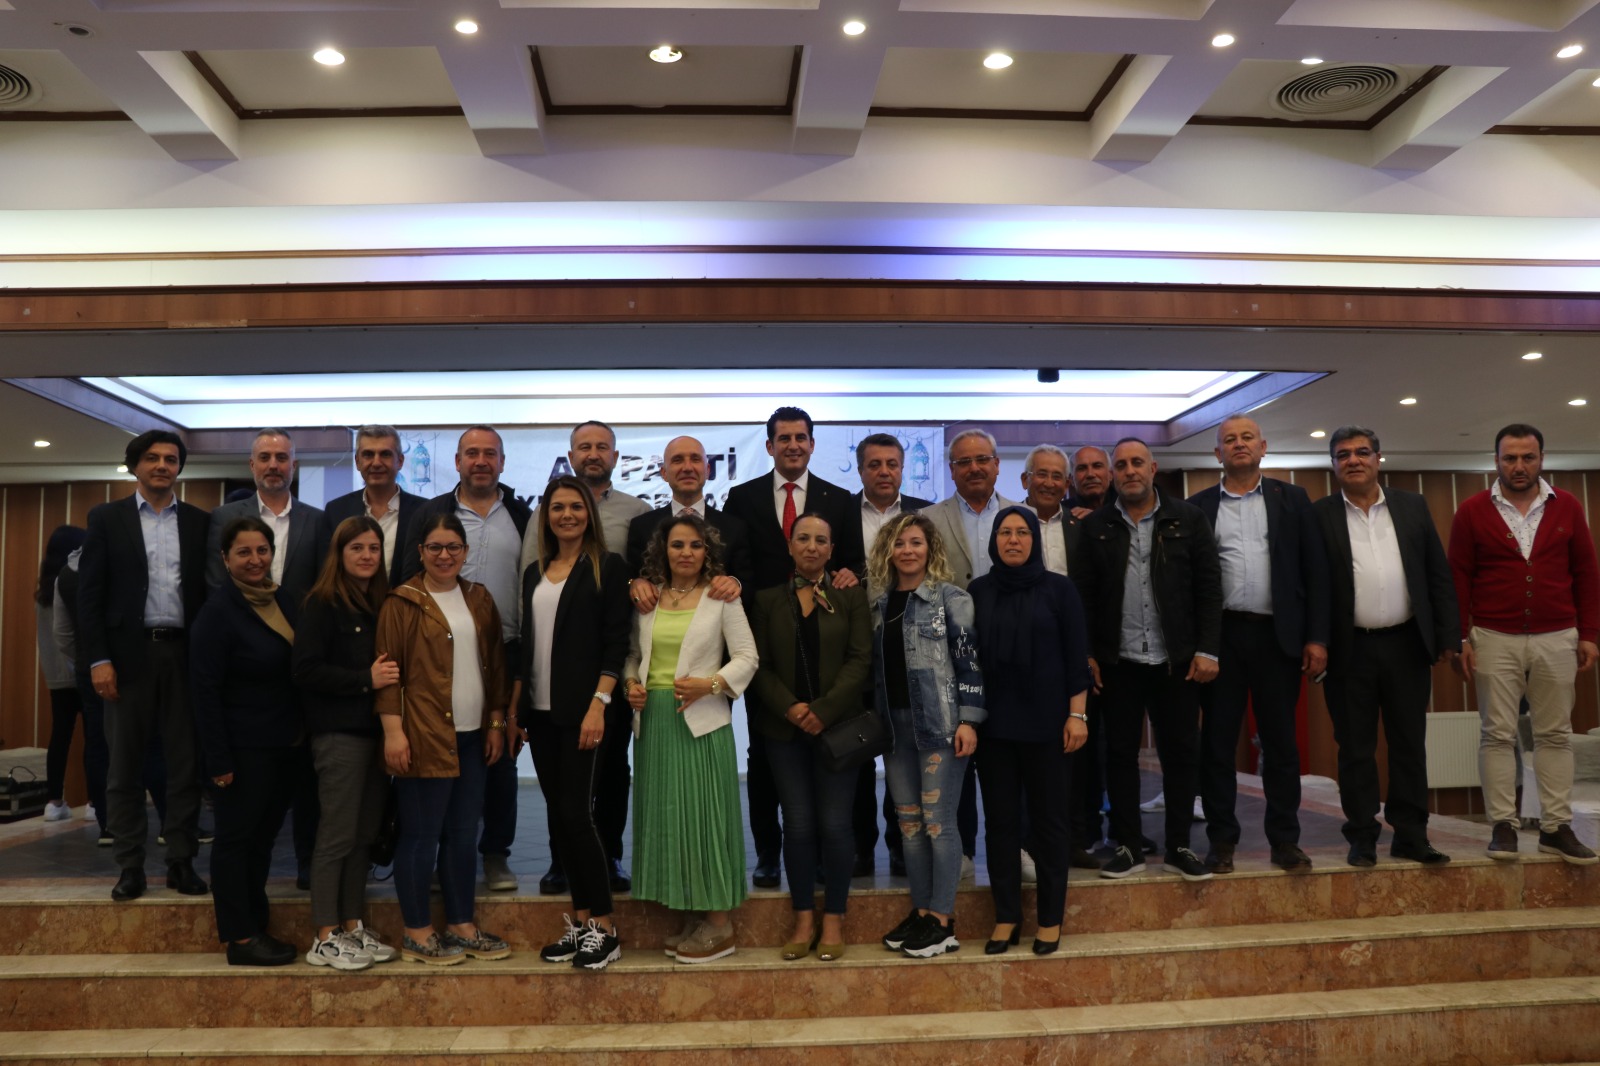 AK Parti Sarayköy İlçe Teşkilatı tarafından düzenlenen iftar yemeğinde buluştu.